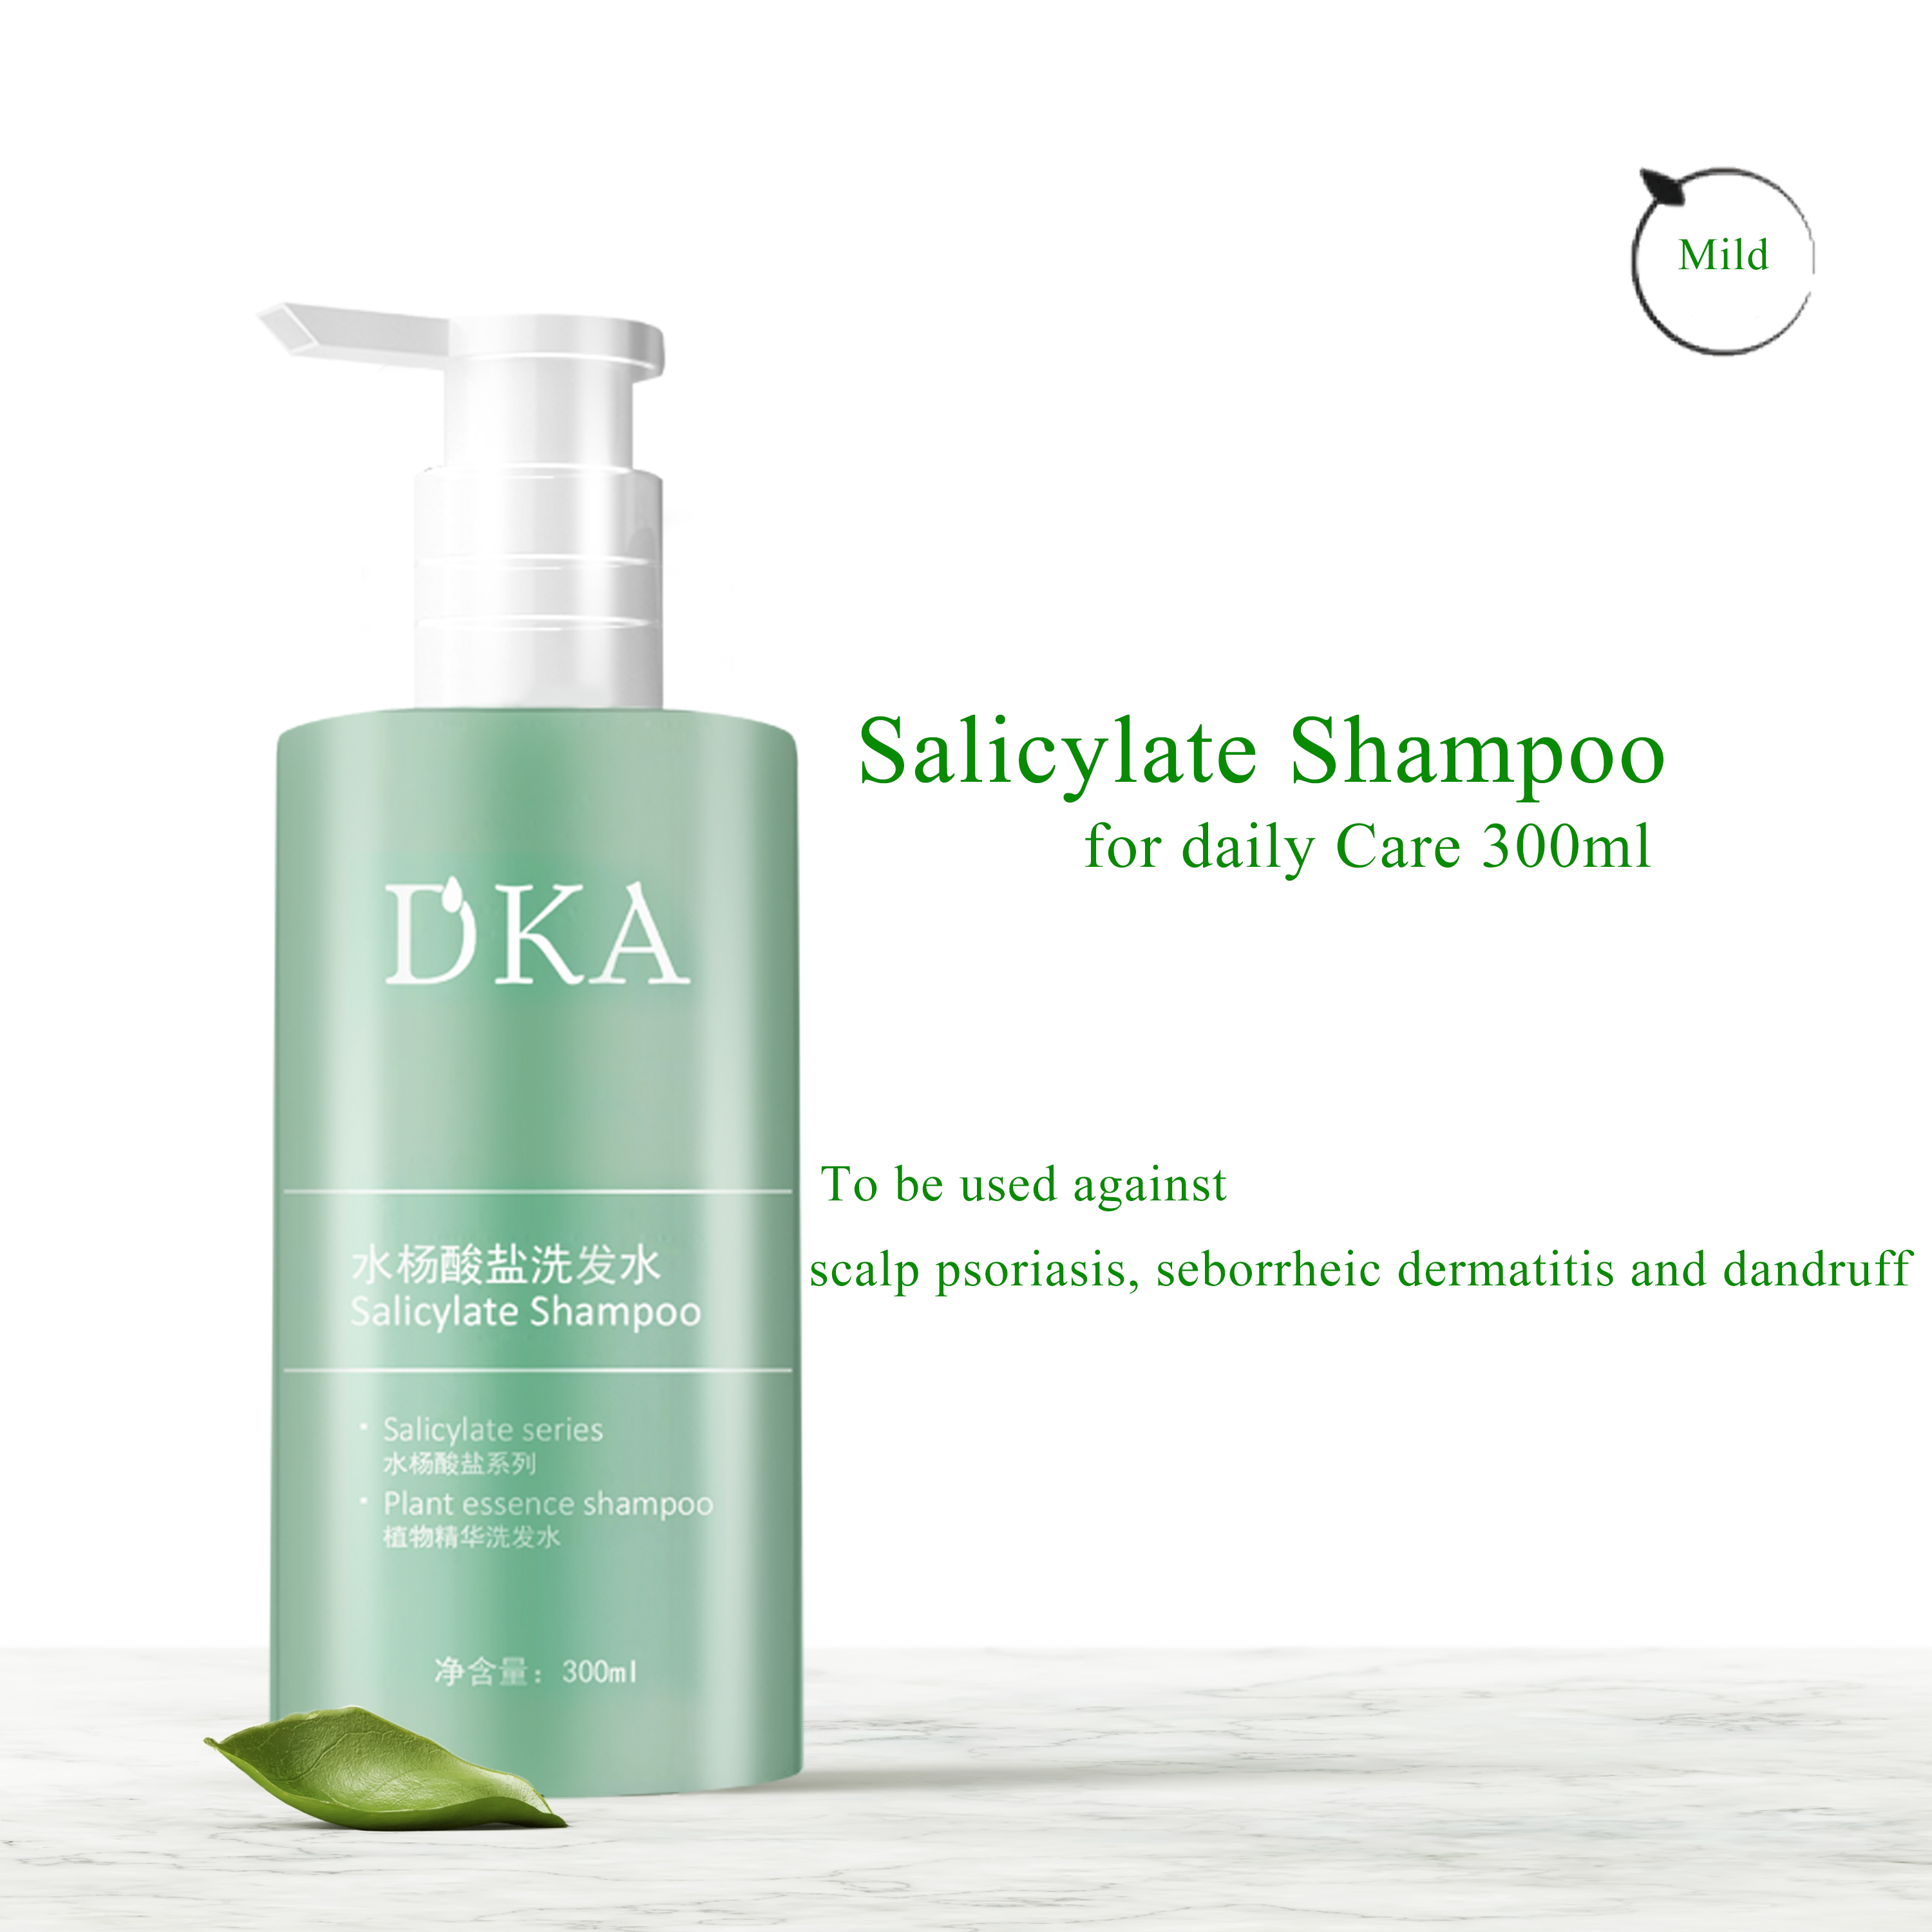 DKA Salicylate Shampoo 300ml